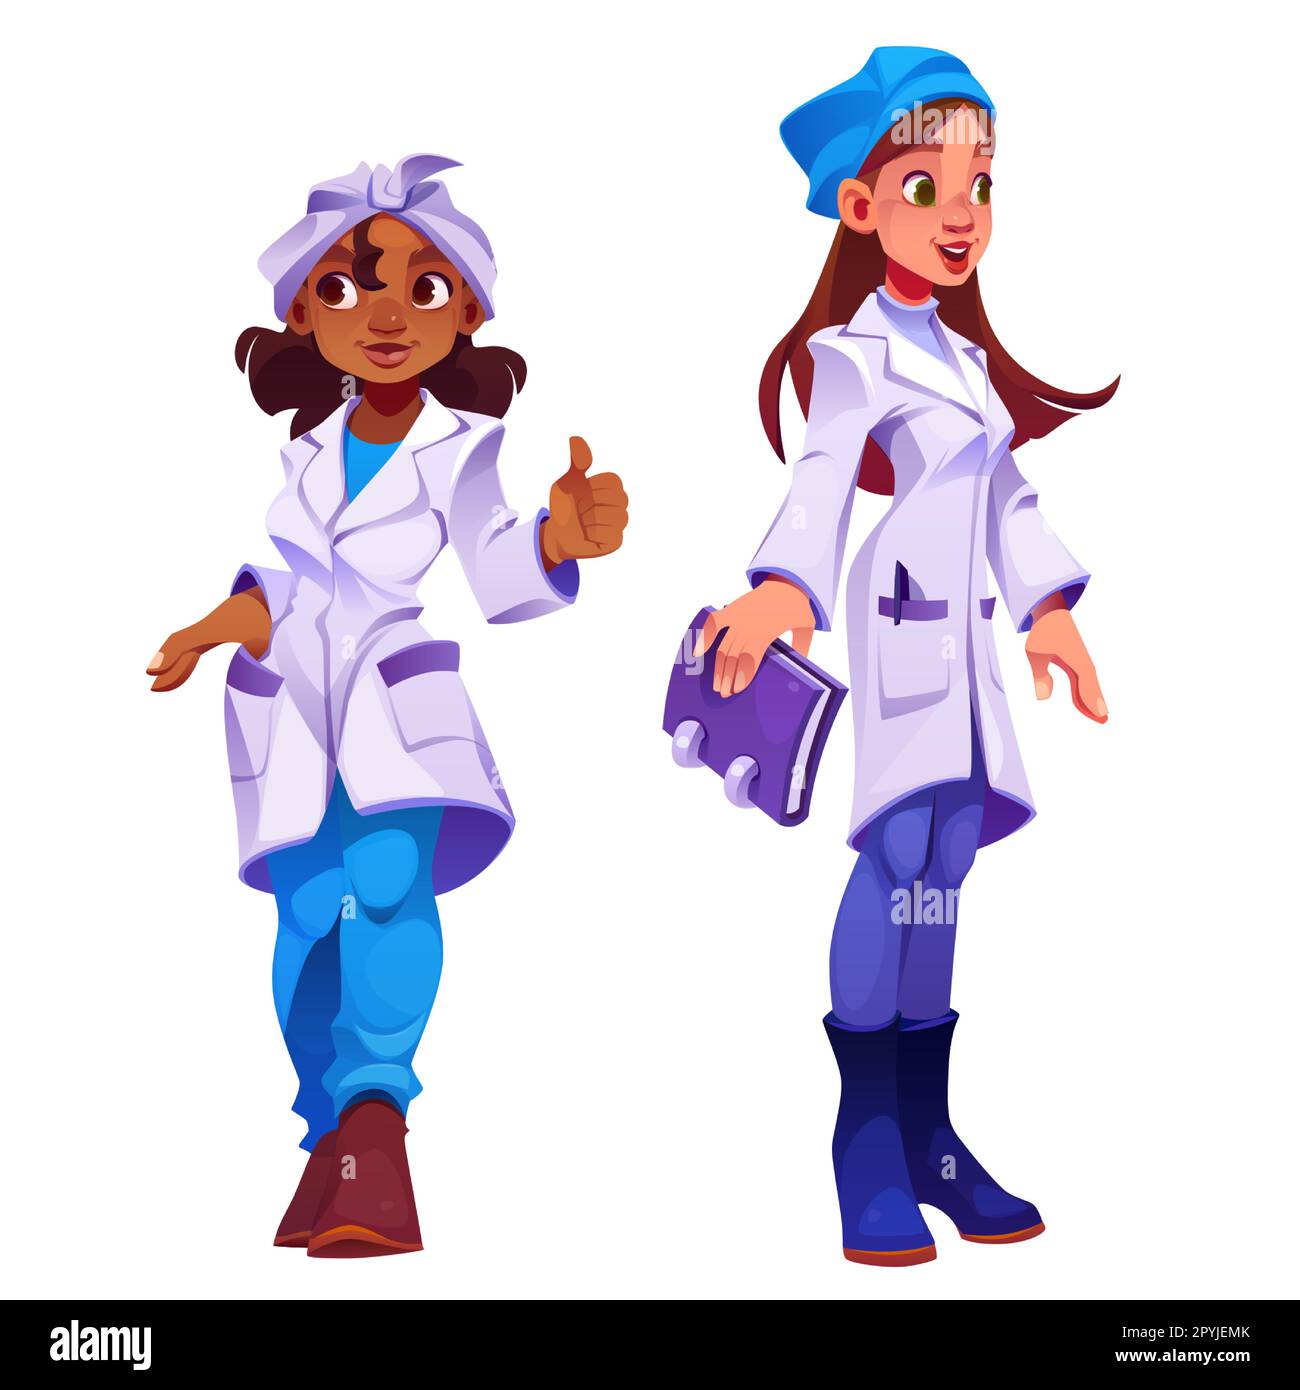 Weibliche Ärztin Cartoon-Vektorfigur. Isolierte weibliche Krankenhauspersonal-Illustration. Professionelles Gesundheitsteam mit Zahnarzt und Therapeut. Glücklicher junger afrikanischer Apotheker in Uniform mit Mütze. Stock Vektor